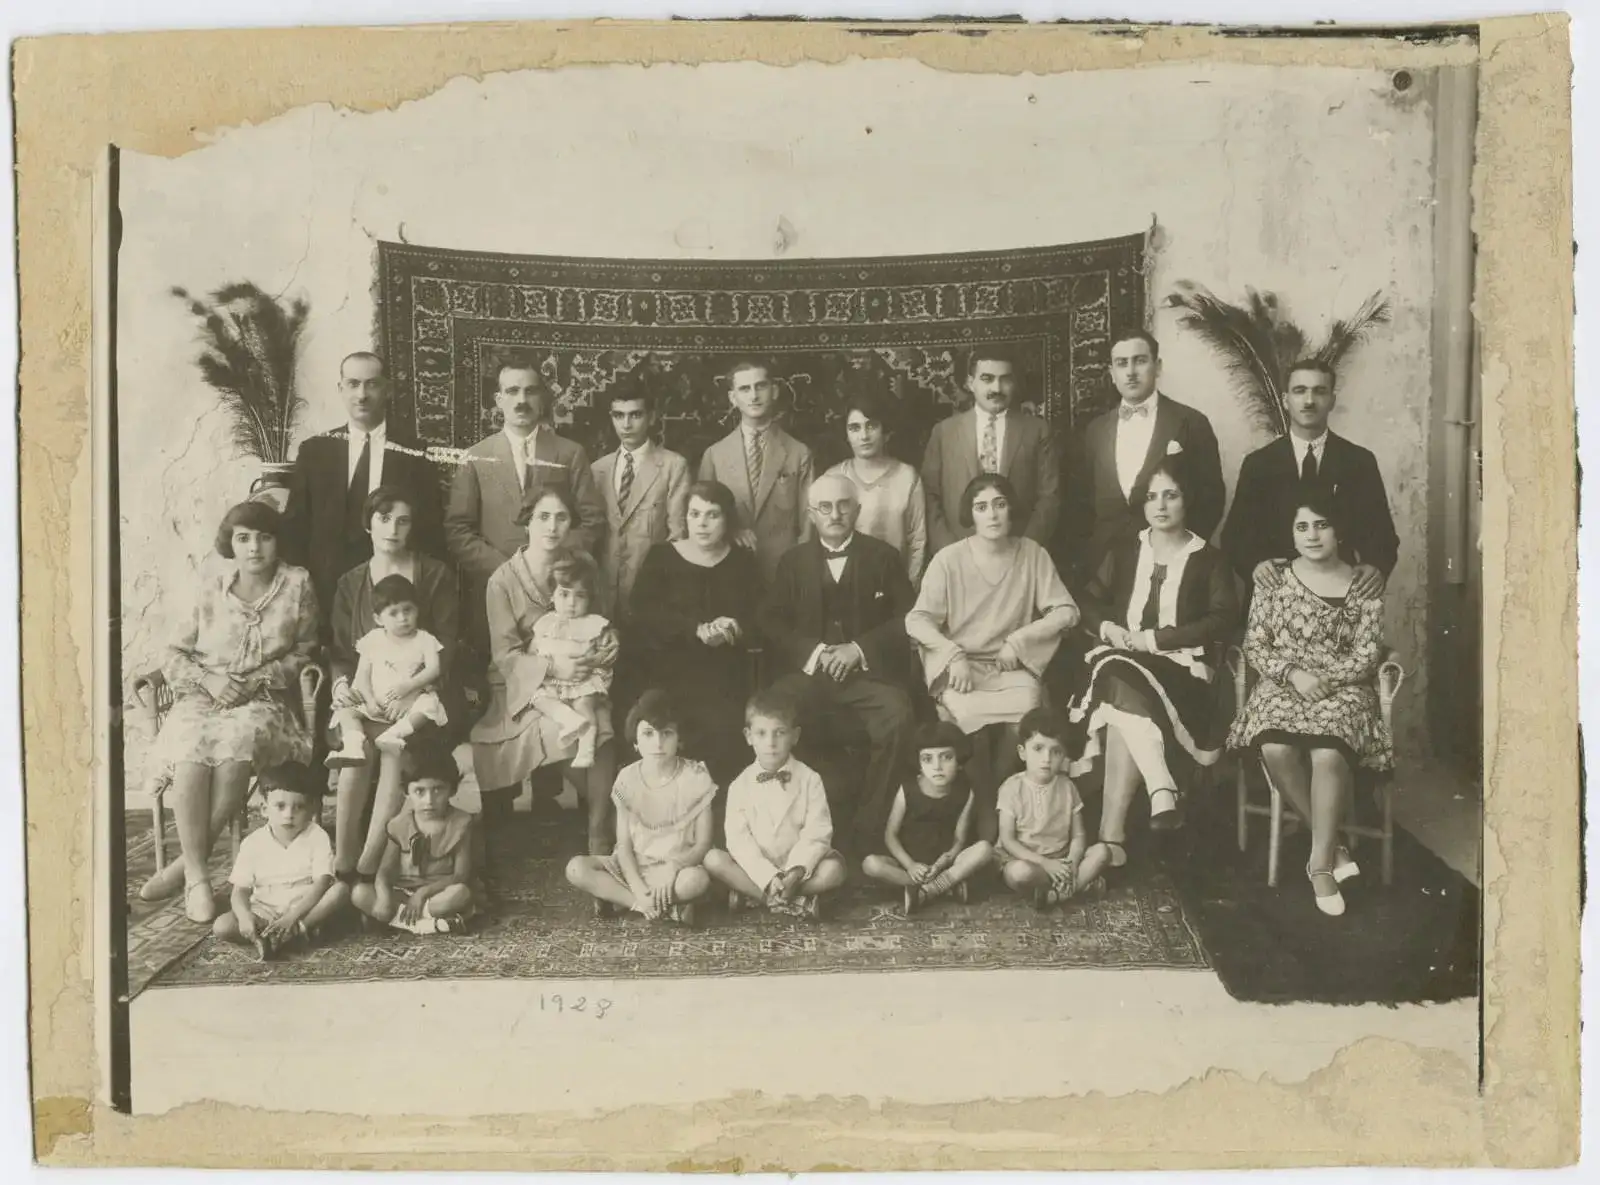 الصورة السنوية لعائلة سبريدون صروف. يافا، 1928. من ألبوم عبلة وألفرد طوباسي.